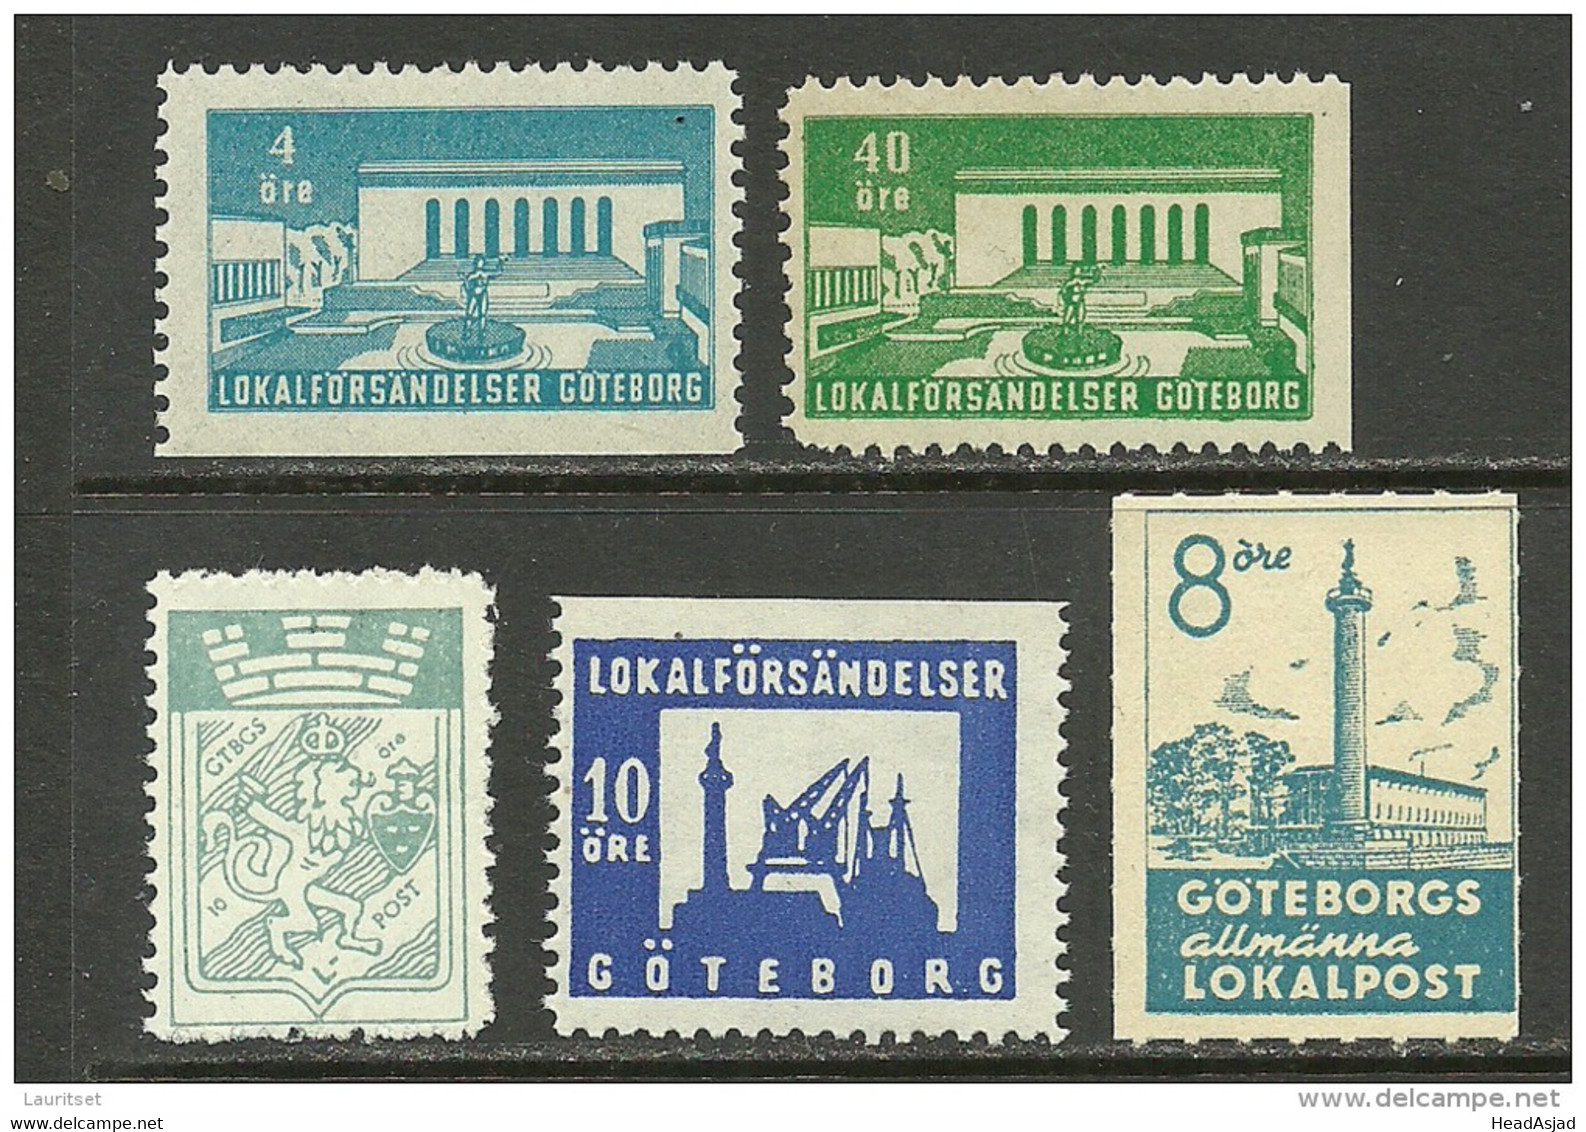 SCHWEDEN Sweden GÖTEBORG Stadtpost Local City Post MNH - Local Post Stamps